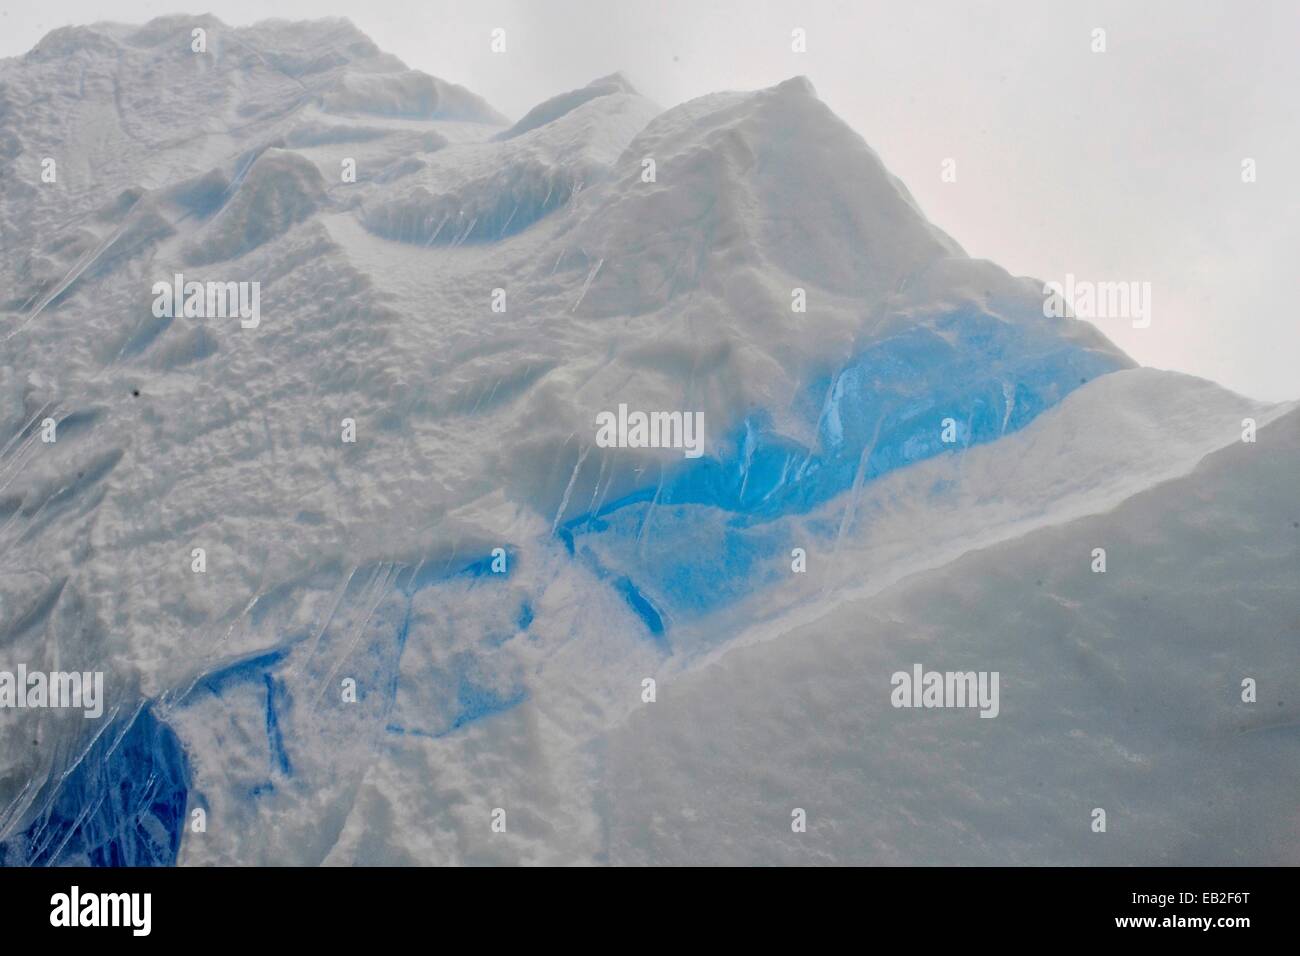 Vecchio puro ghiaccio che manca di bolle di ossigeno dando il ghiaccio il bel colore azzurro. Noto anche come "Iceberg cimitero,' Pleneau è un labirinto di iceberg tra le altissime montagne di Booth isola. Foto Stock